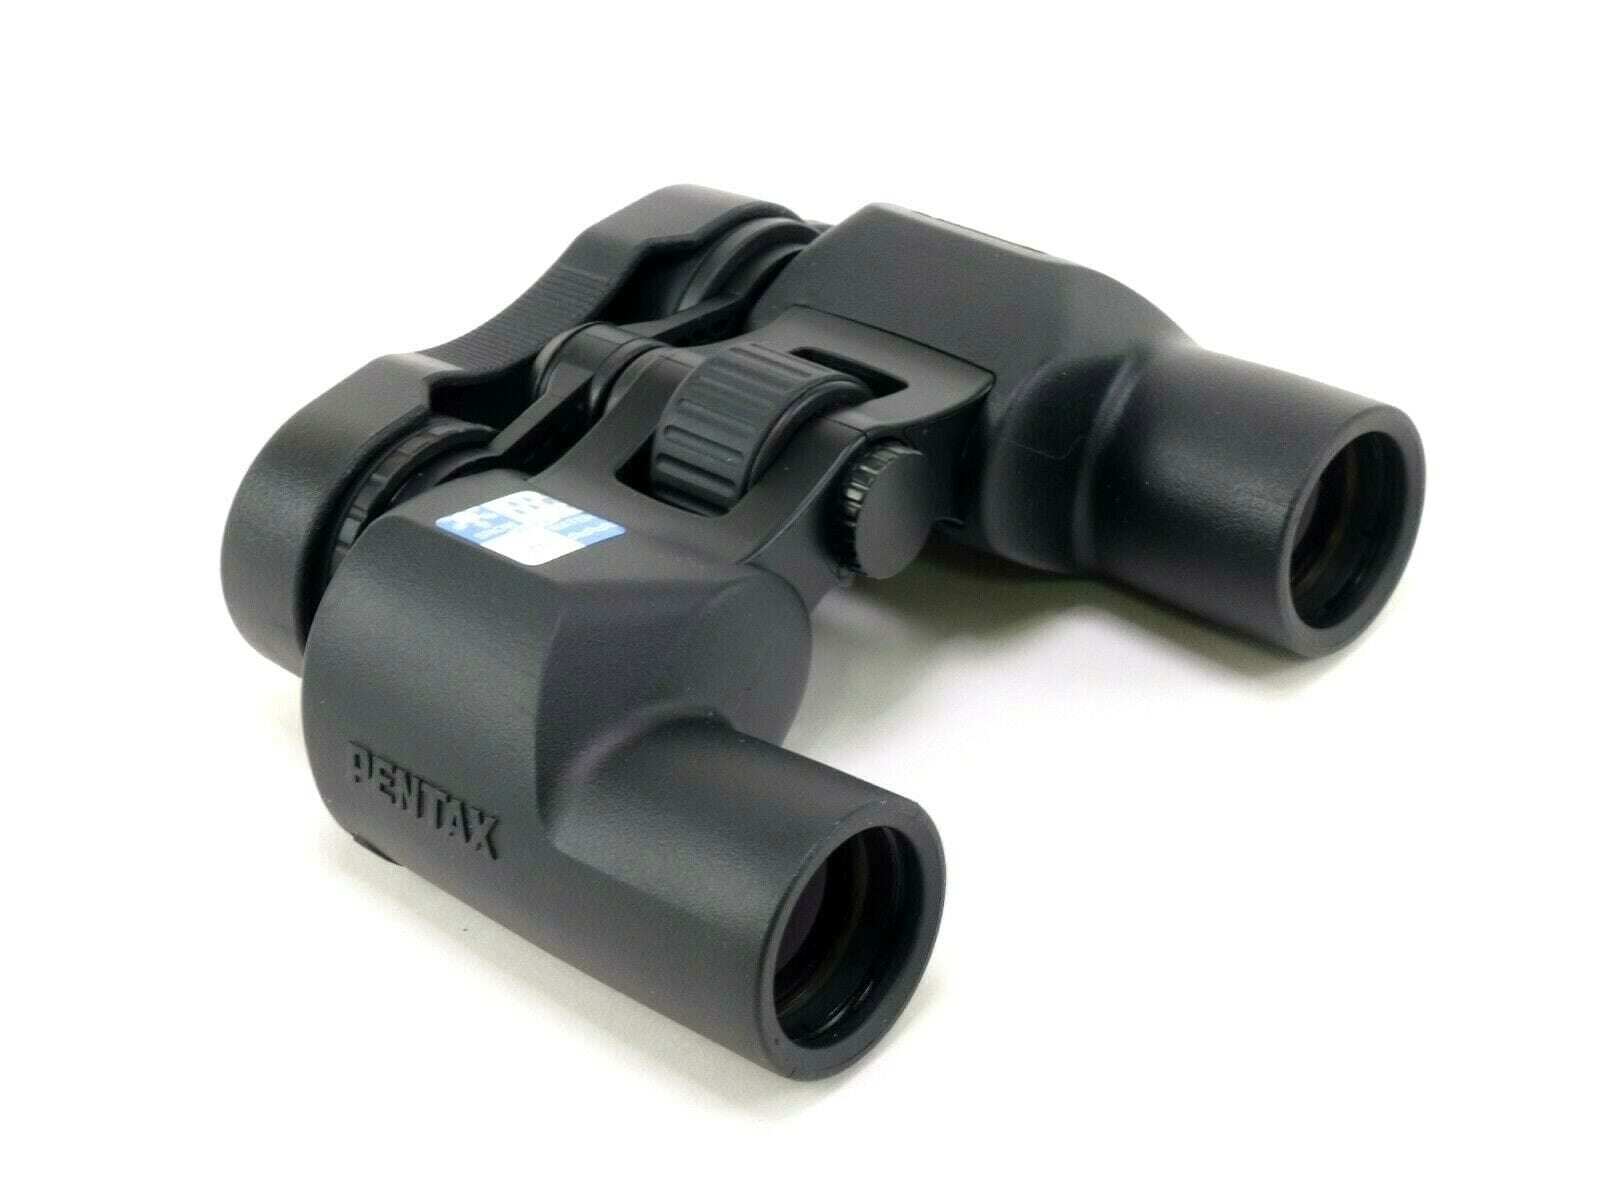 Pentax 10x30 PCF CW Binoculars - Demo – Camera Exchange